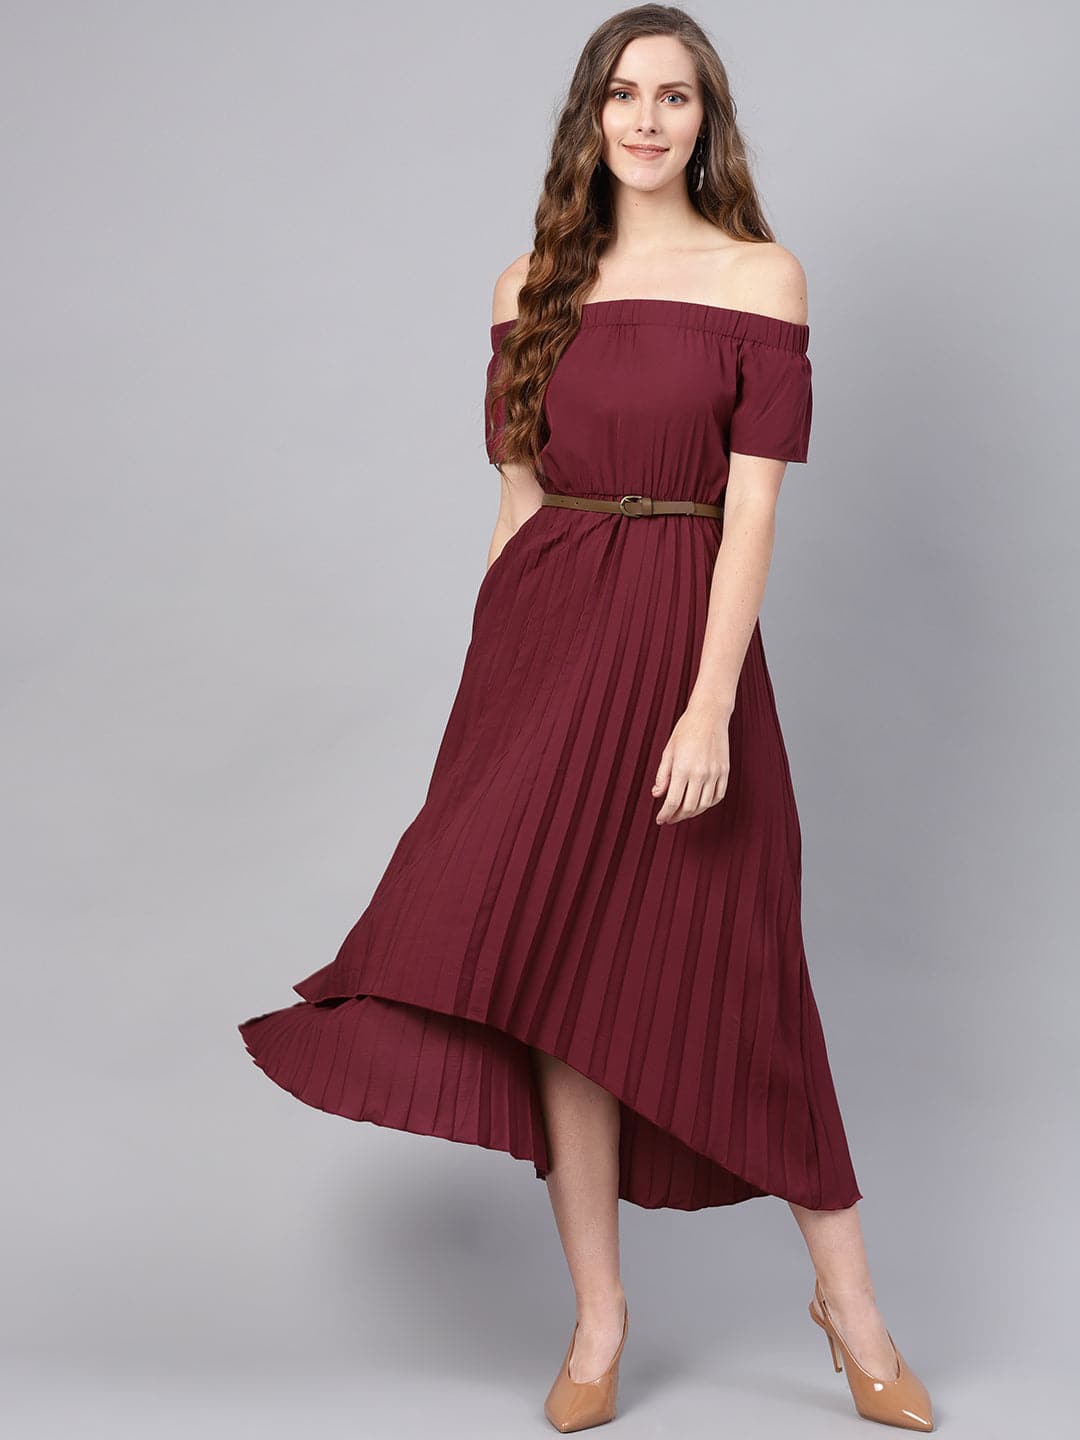 Burgundy Off Shoulder High Low Belted Pleated Dress-Dress-SASSAFRAS